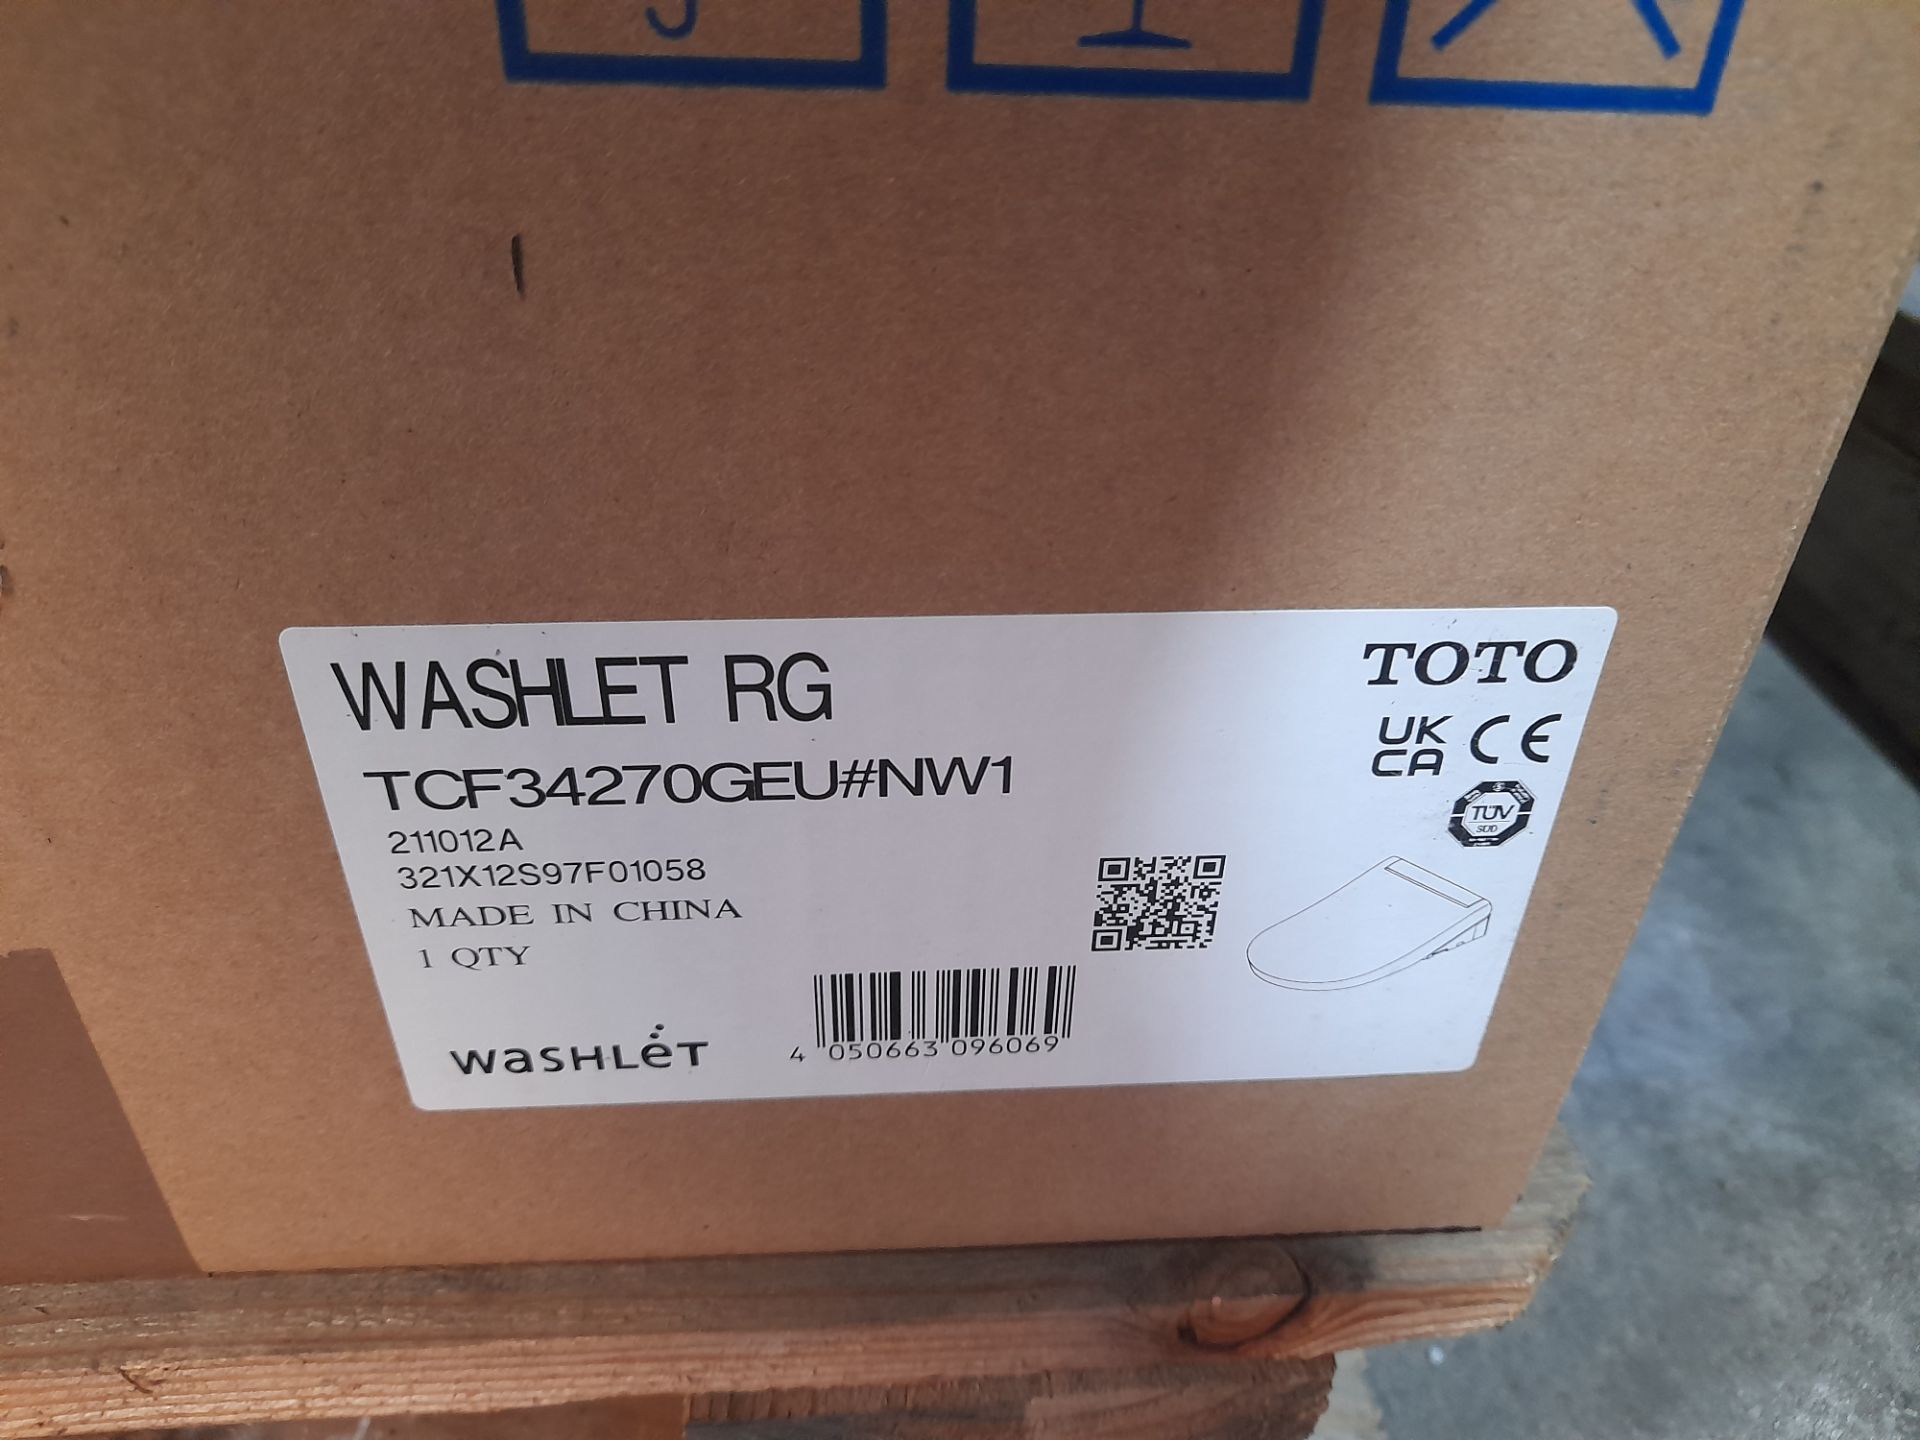 Toto Washlet (TCF34270GEU) (Boxed) - Image 2 of 2